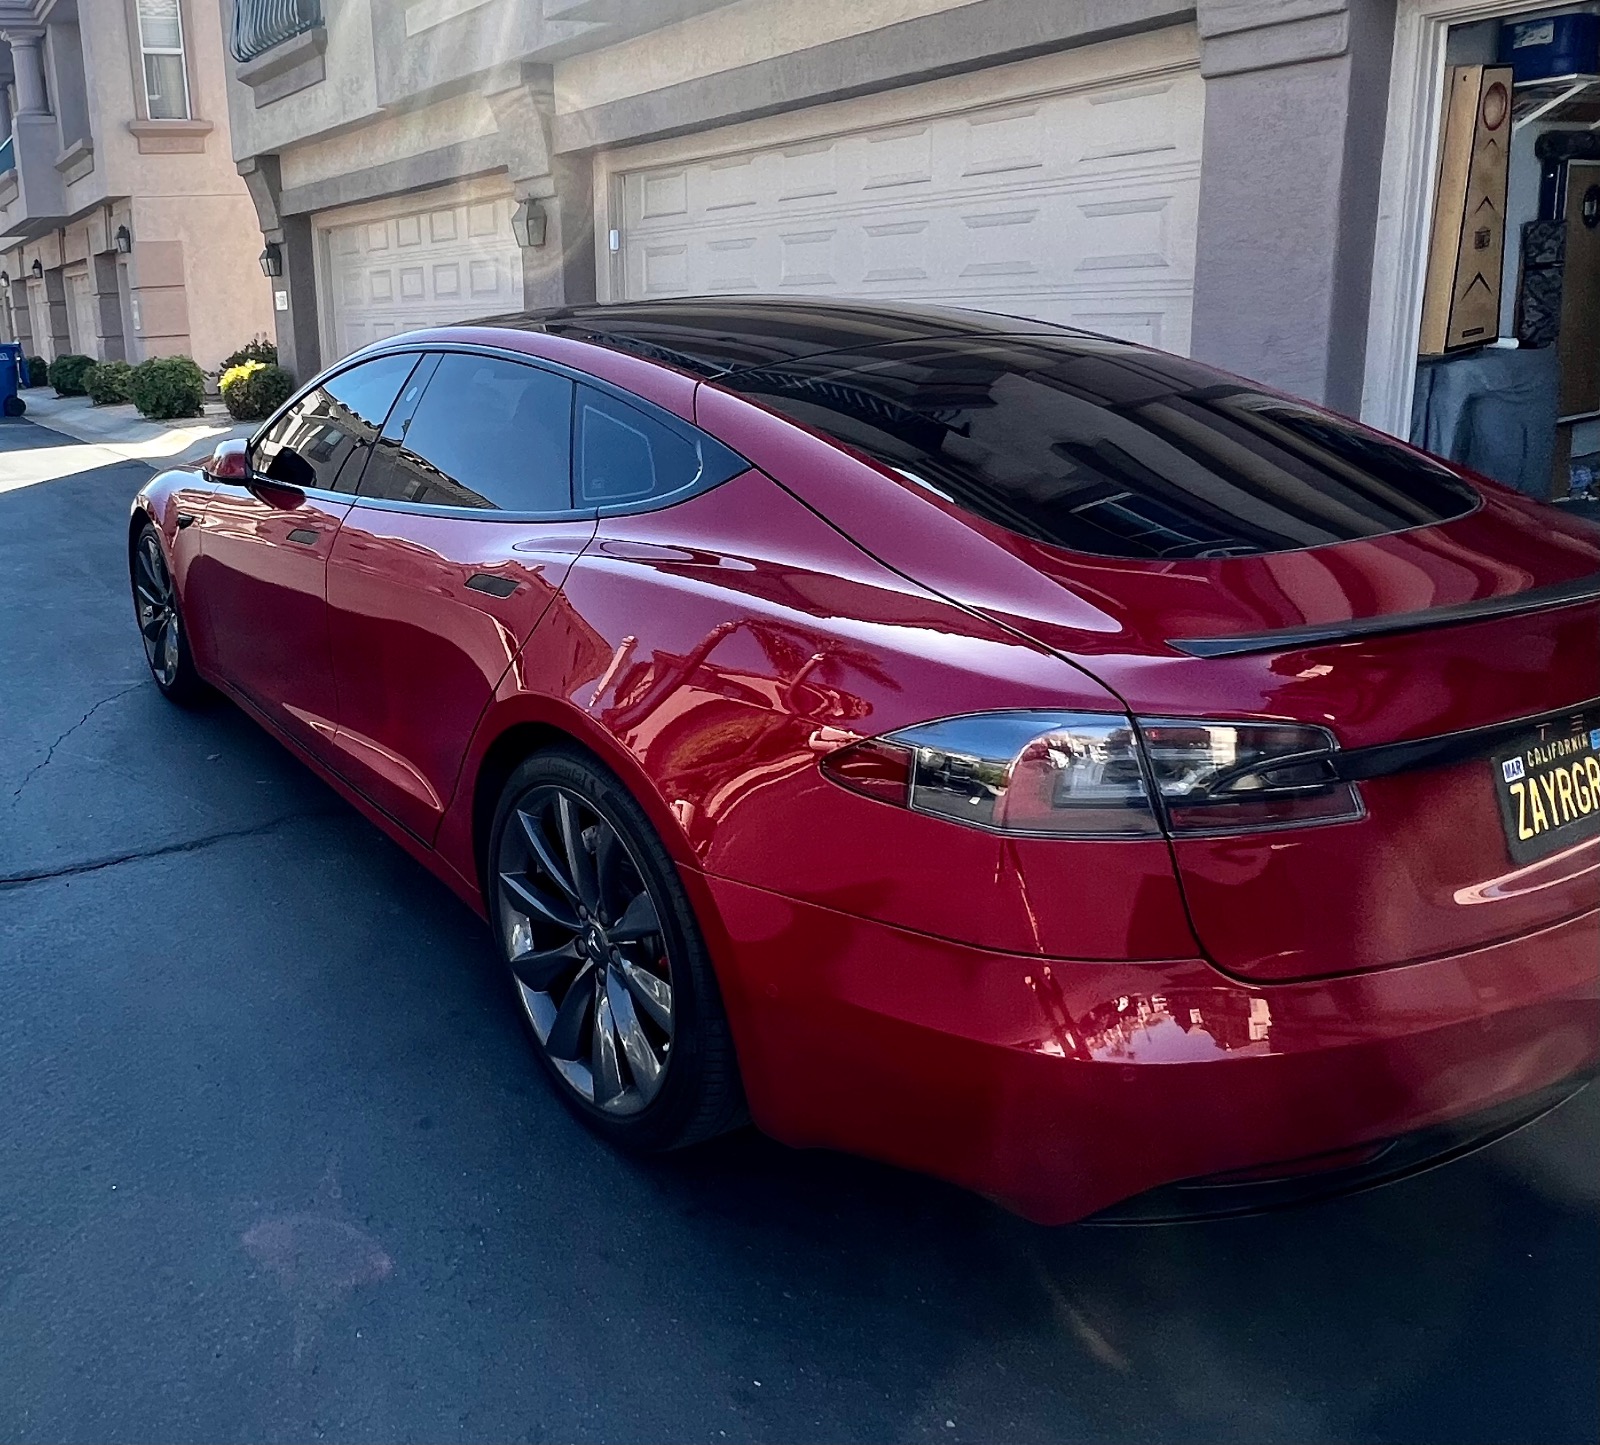 2016 Tesla Model S P90D full